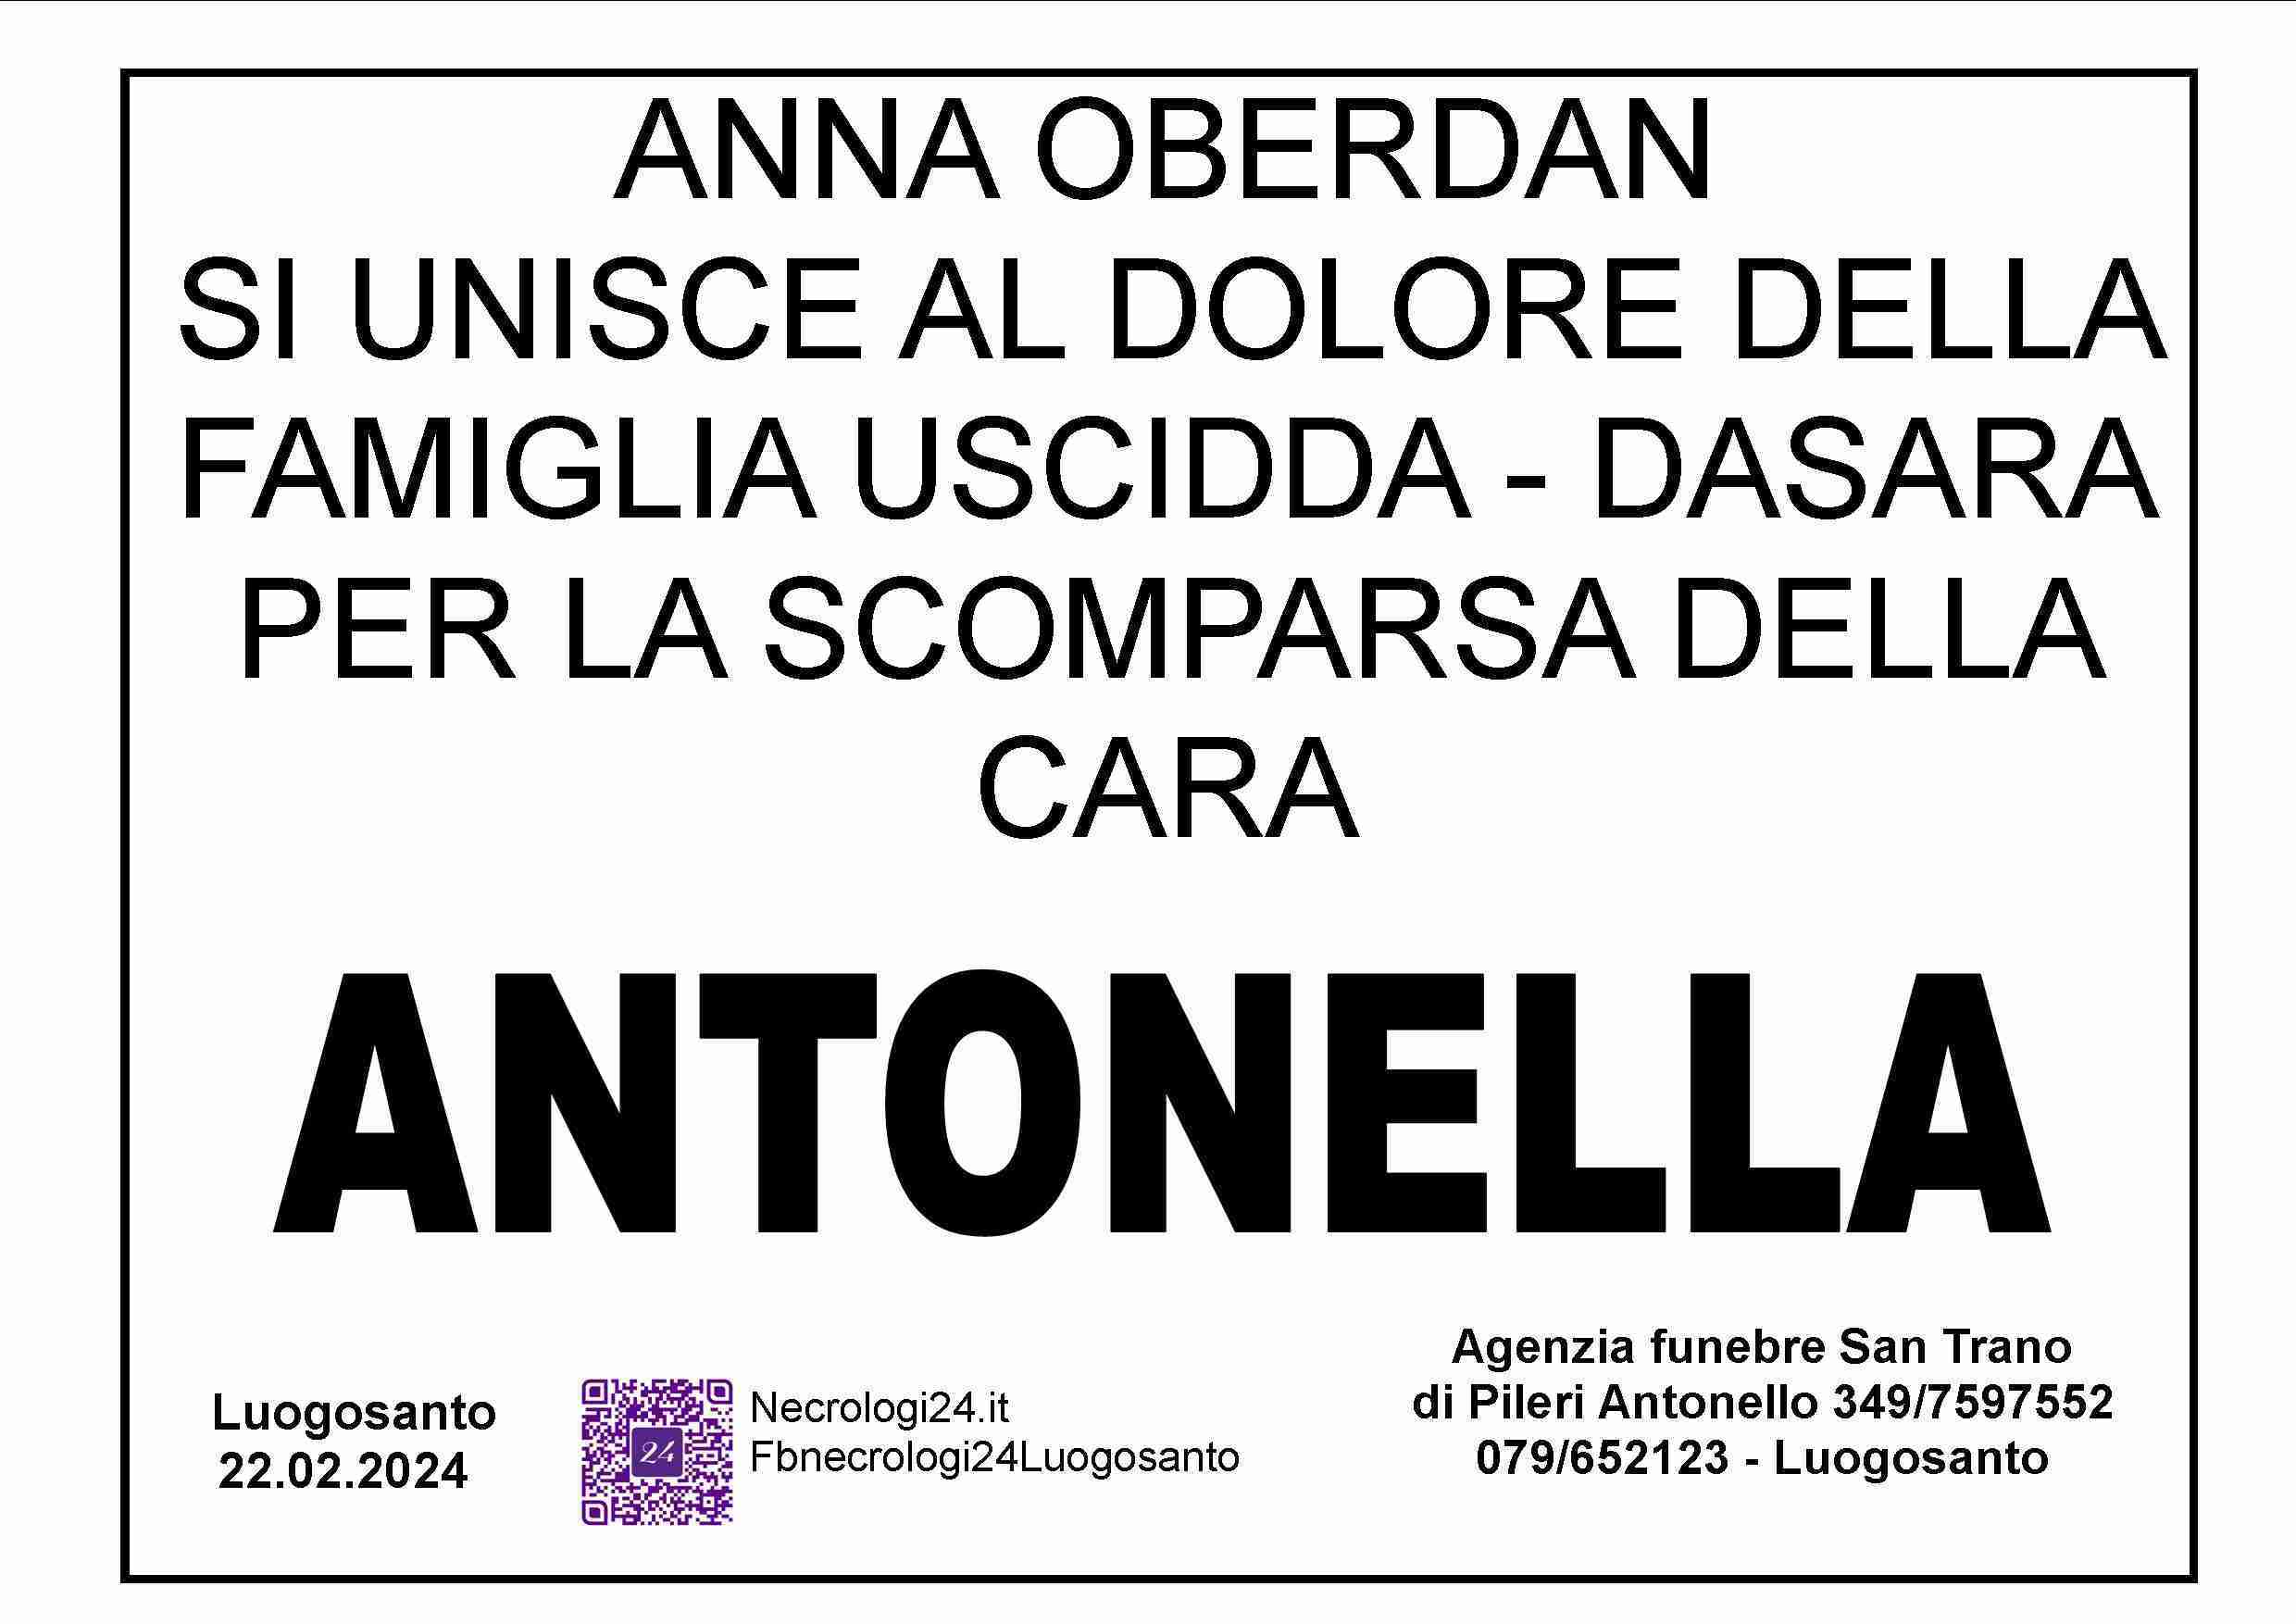 Antonella Uscidda